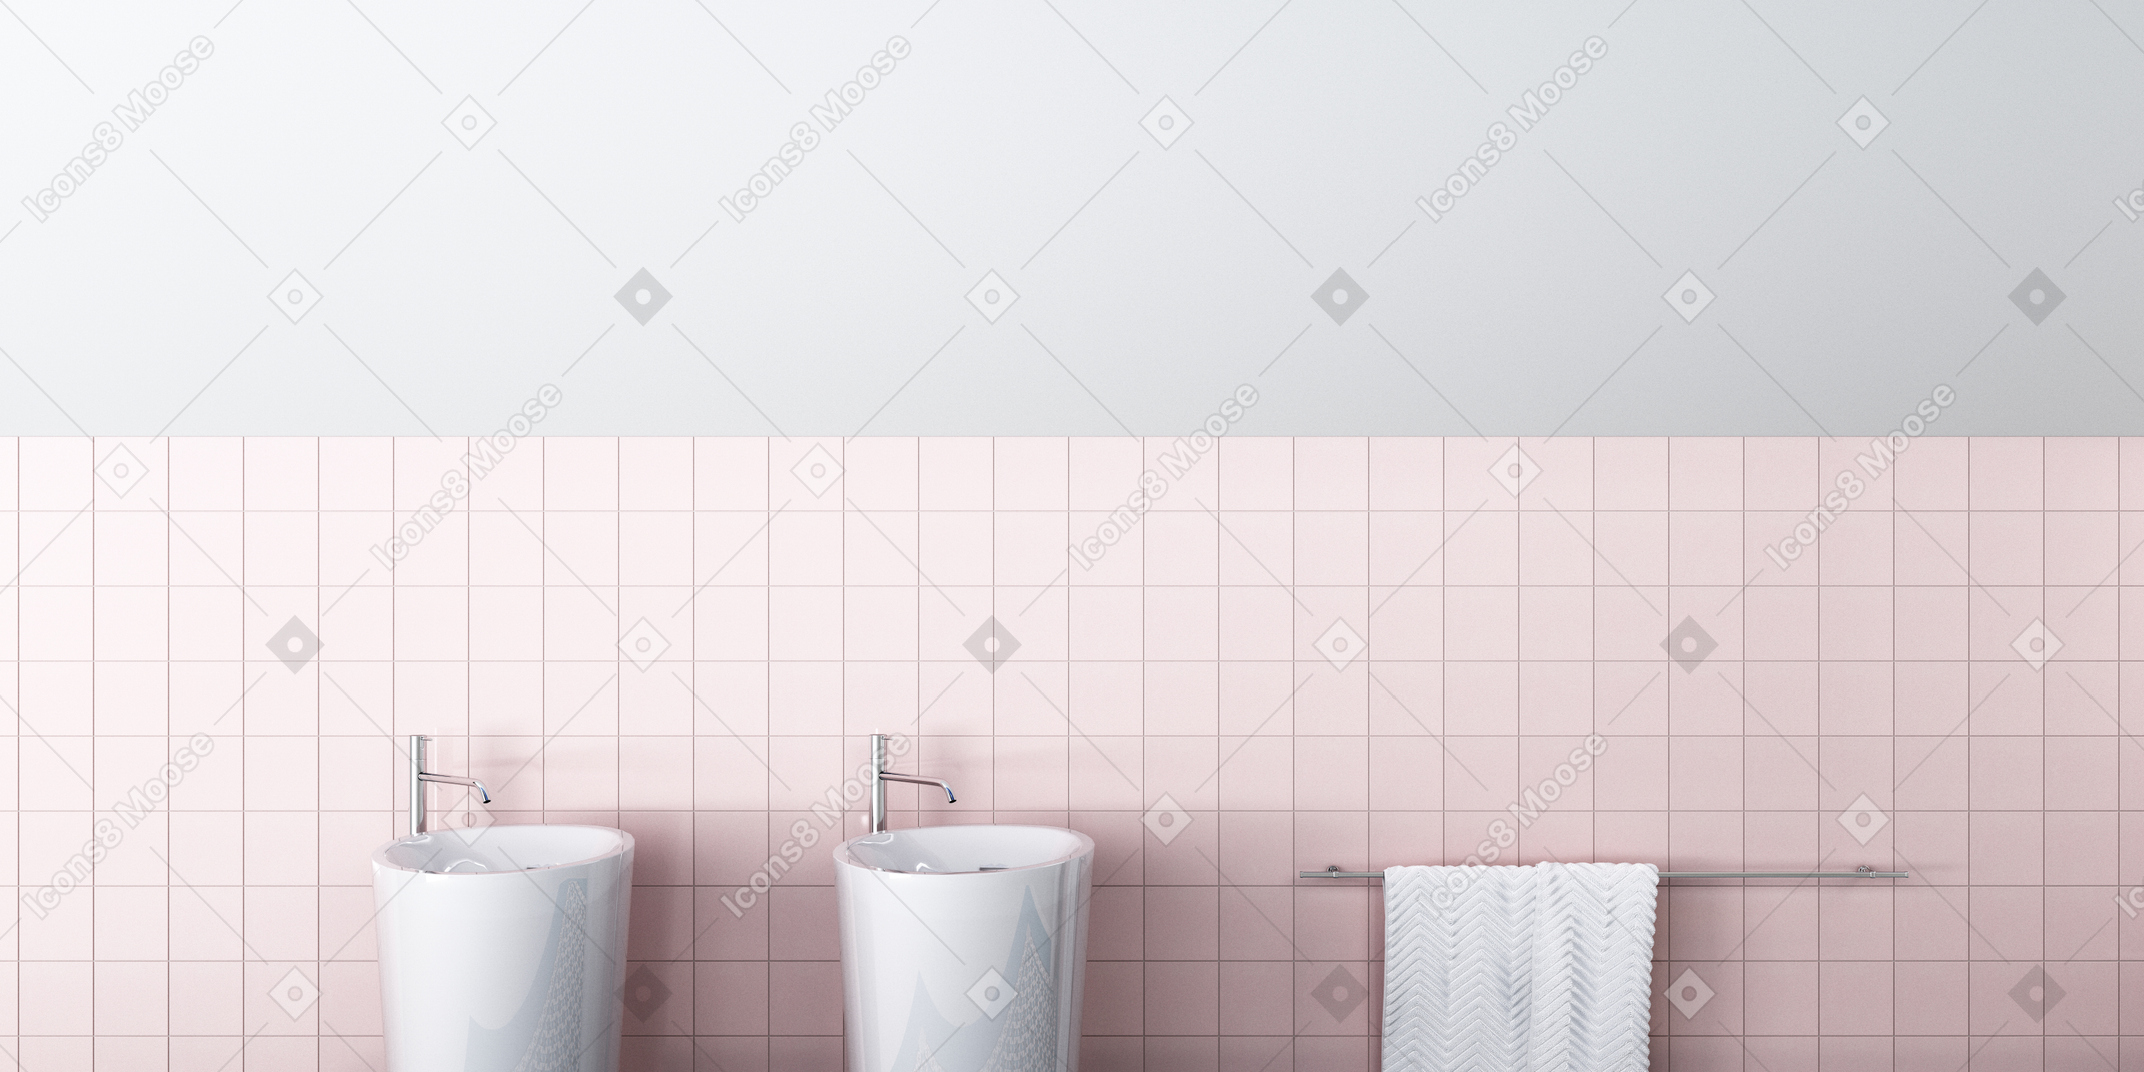 미니멀 한 욕실 디자인